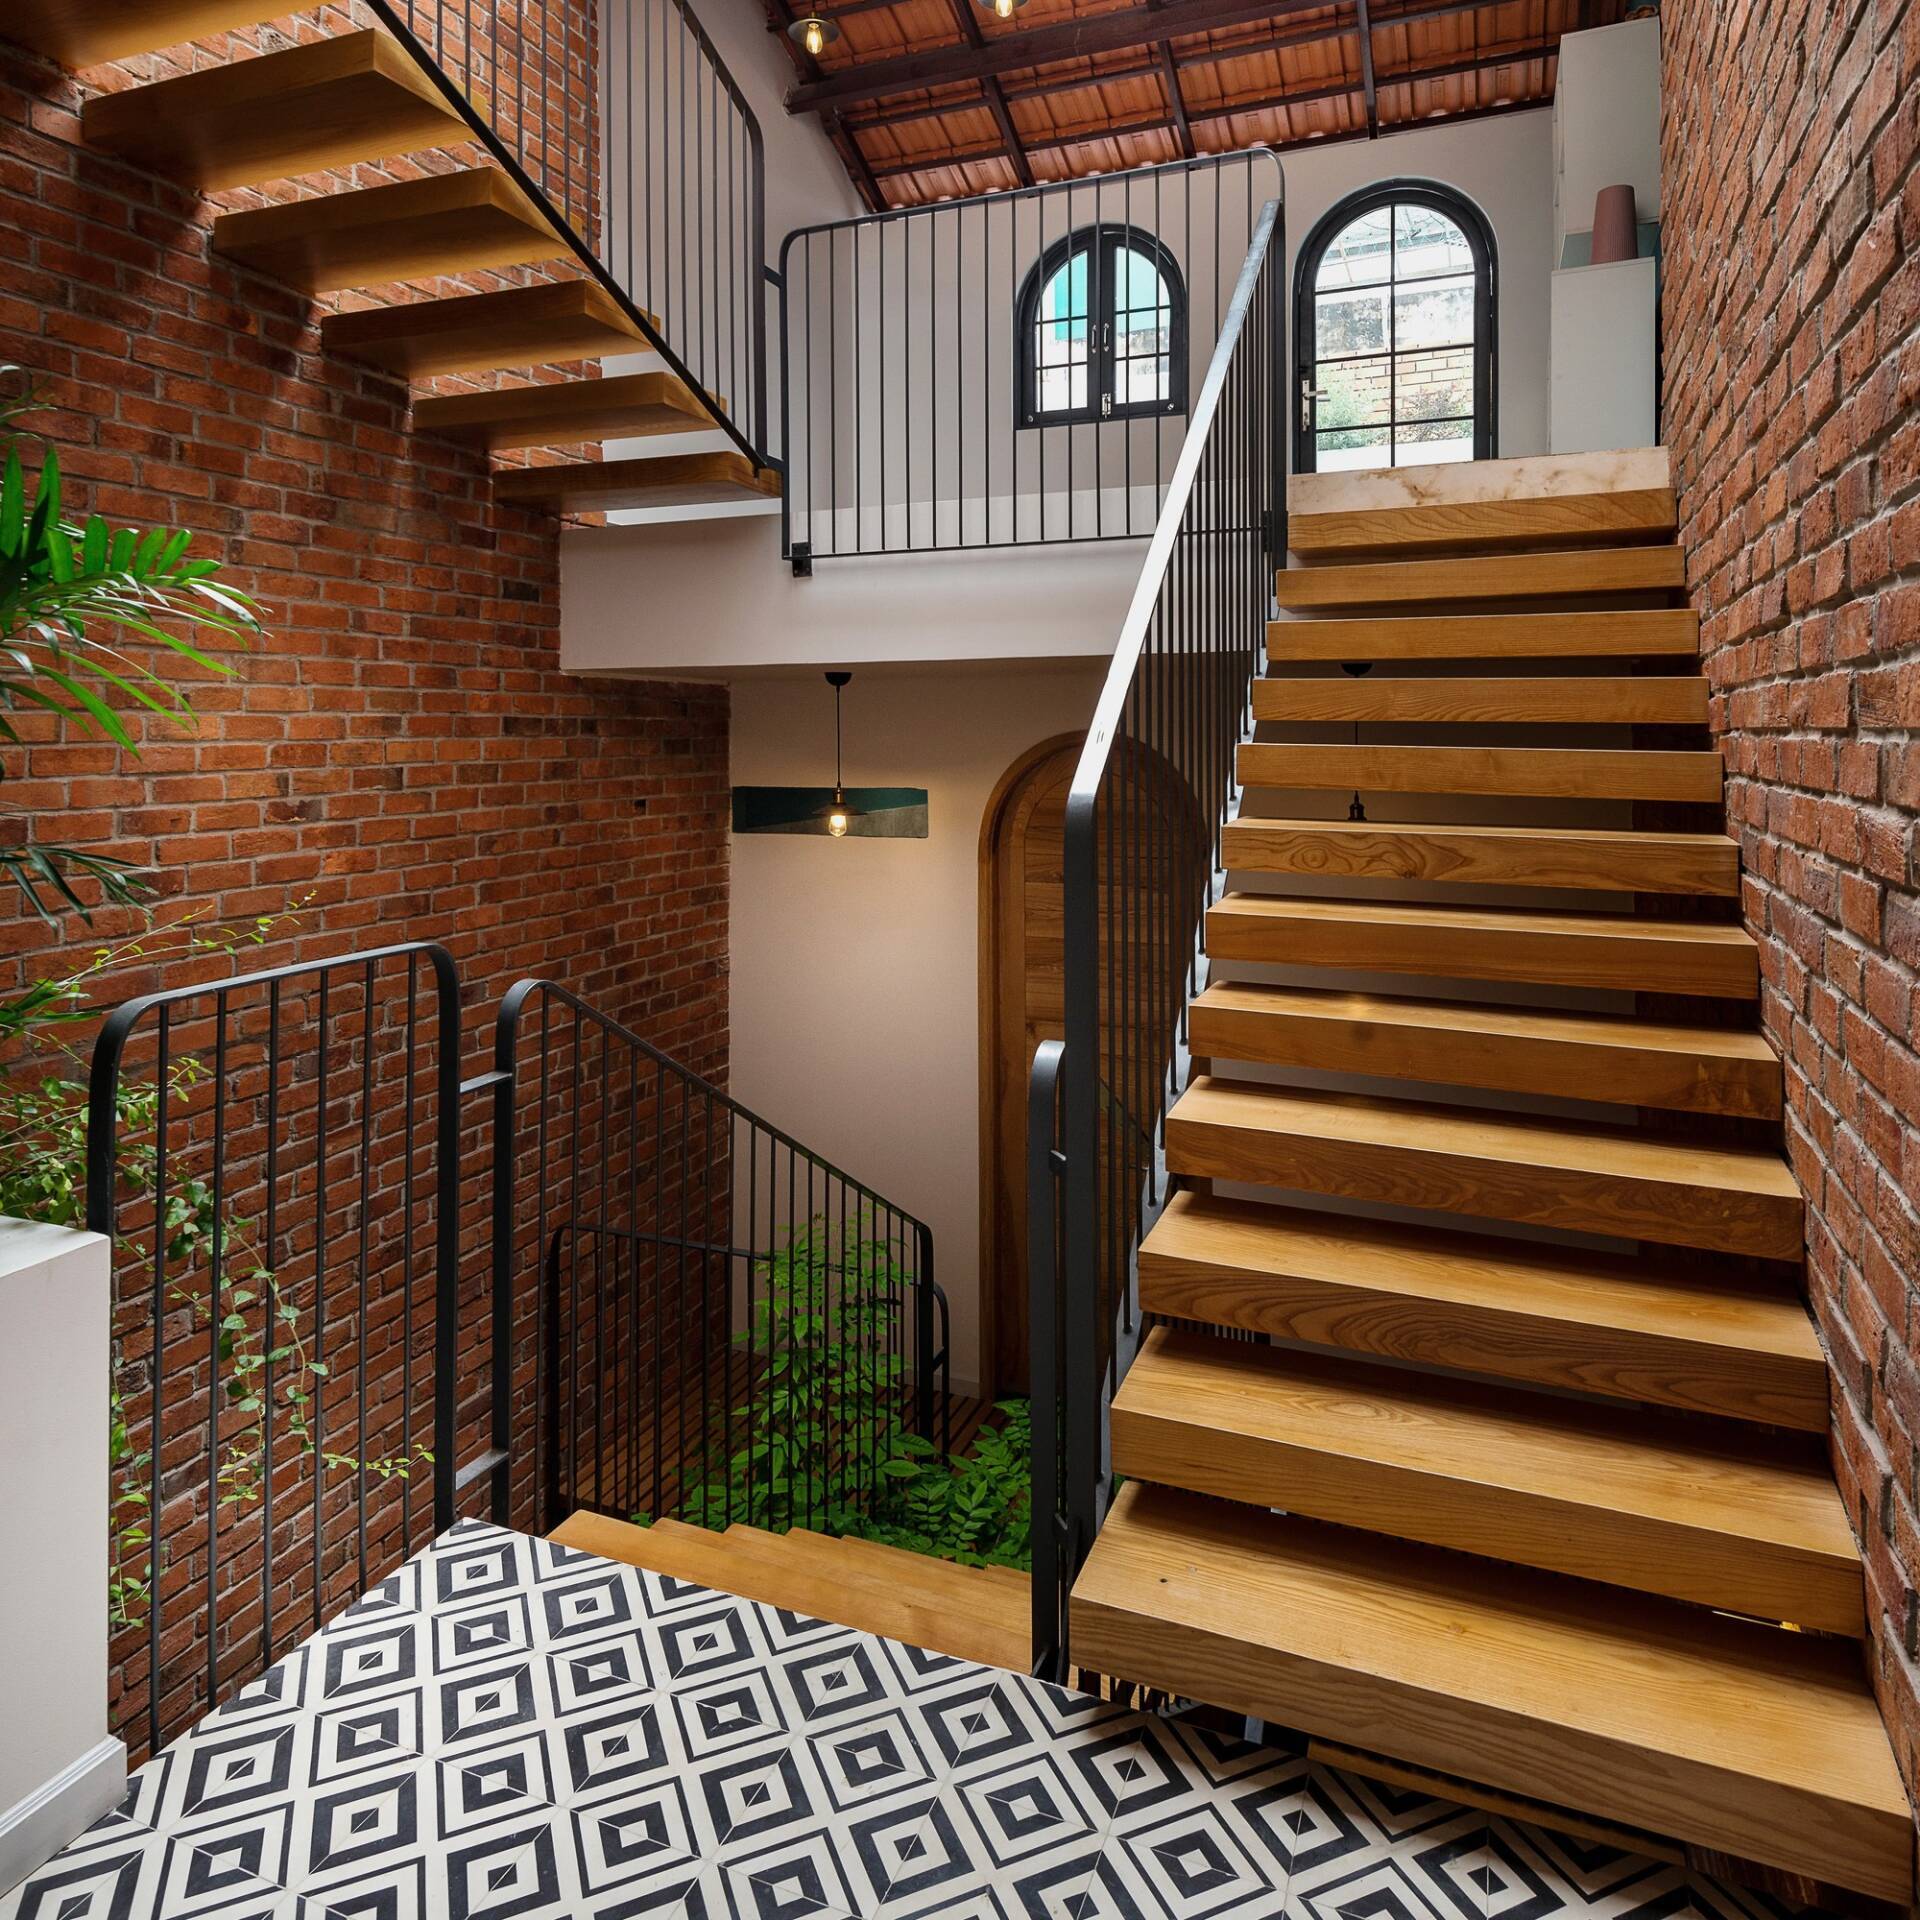 Những ý tưởng thiết kế cầu thang gỗ luôn khiến chúng ta say mê, phiêu lưu và sẽ khiến cho ngôi nhà của bạn trở nên độc đáo và đẹp hơn bao giờ hết. Sáng tạo cùng với kỹ năng thiết kế của các kiến trúc sư chính là yếu tố giúp cho những ý tưởng thiết kế này trở nên đặc biệt hơn.